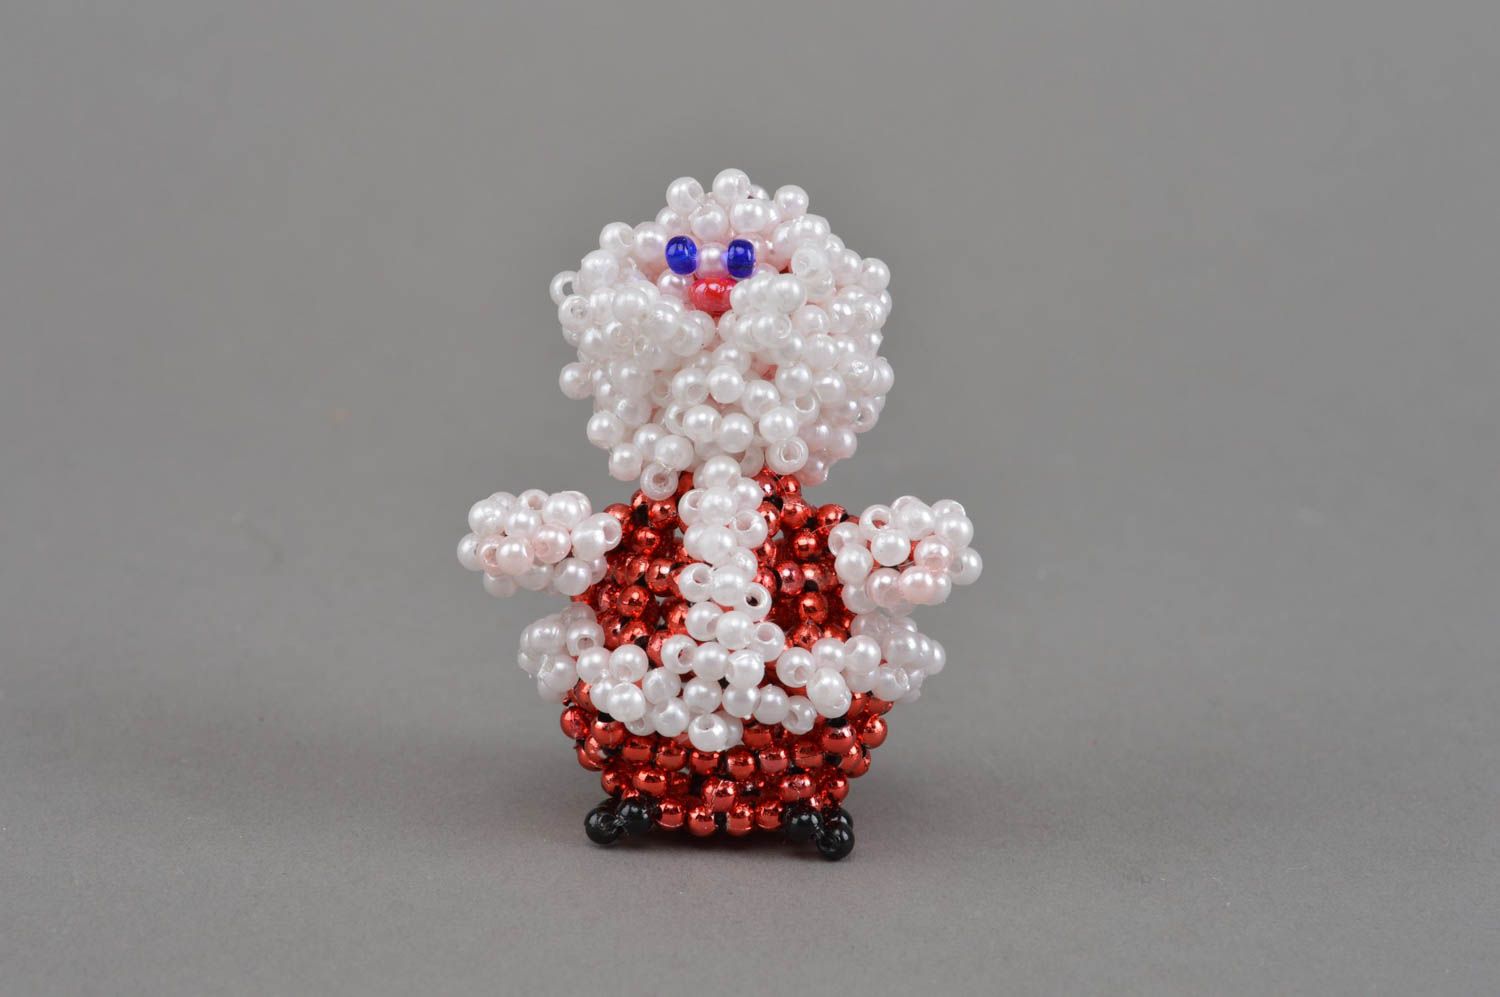 Бисерная фигурка Деда Мороза ручной работы маленькая для настольного декора дома фото 3